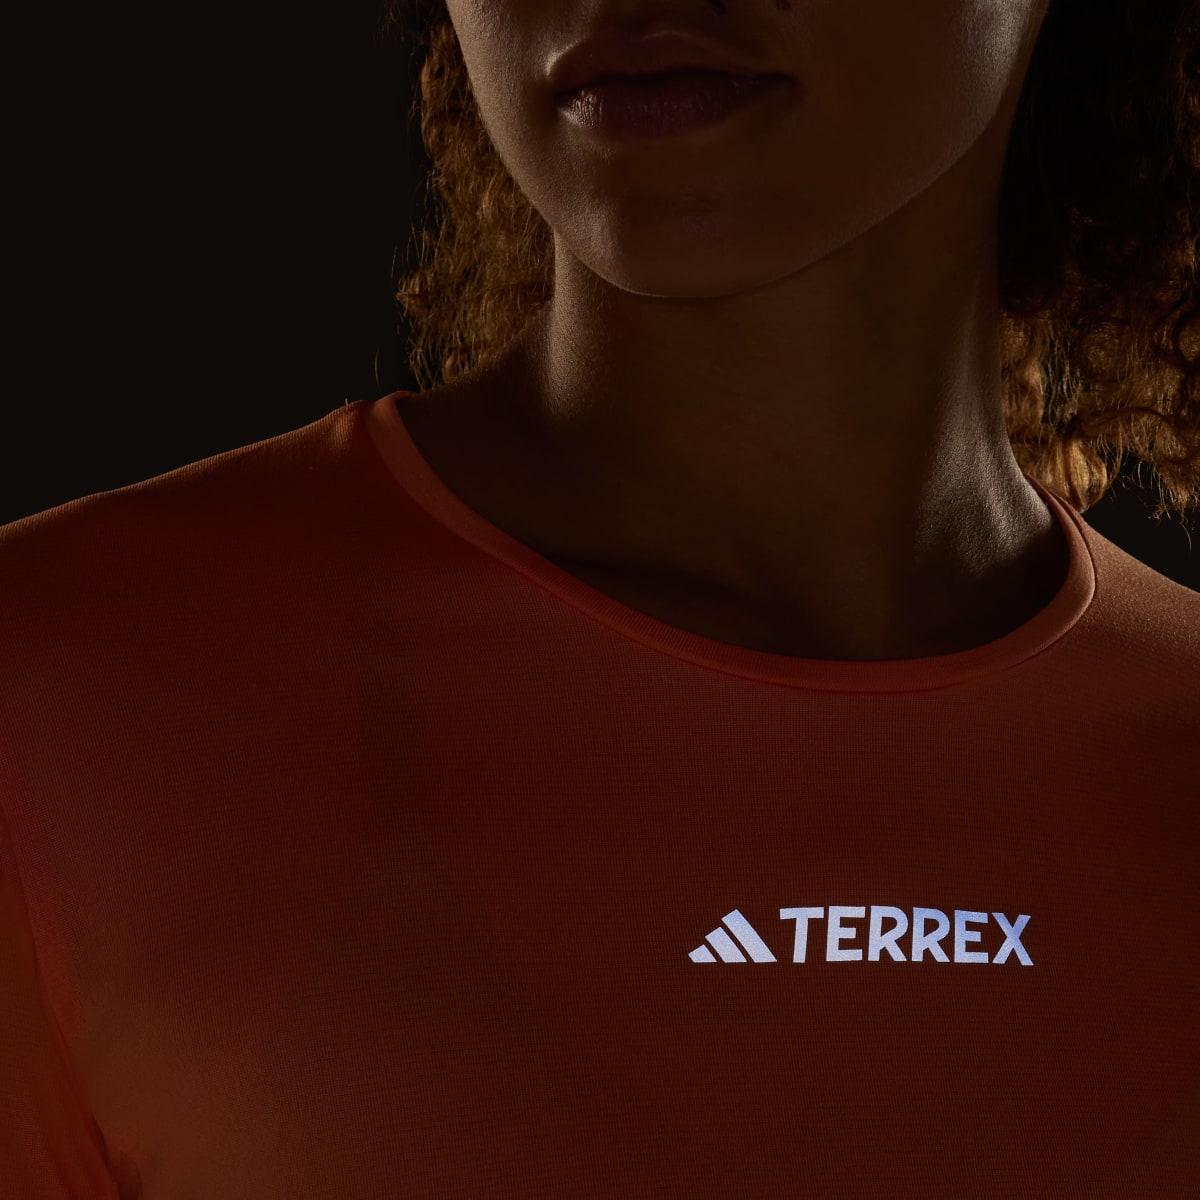 Adidas Koszulka Terrex Multi. 8